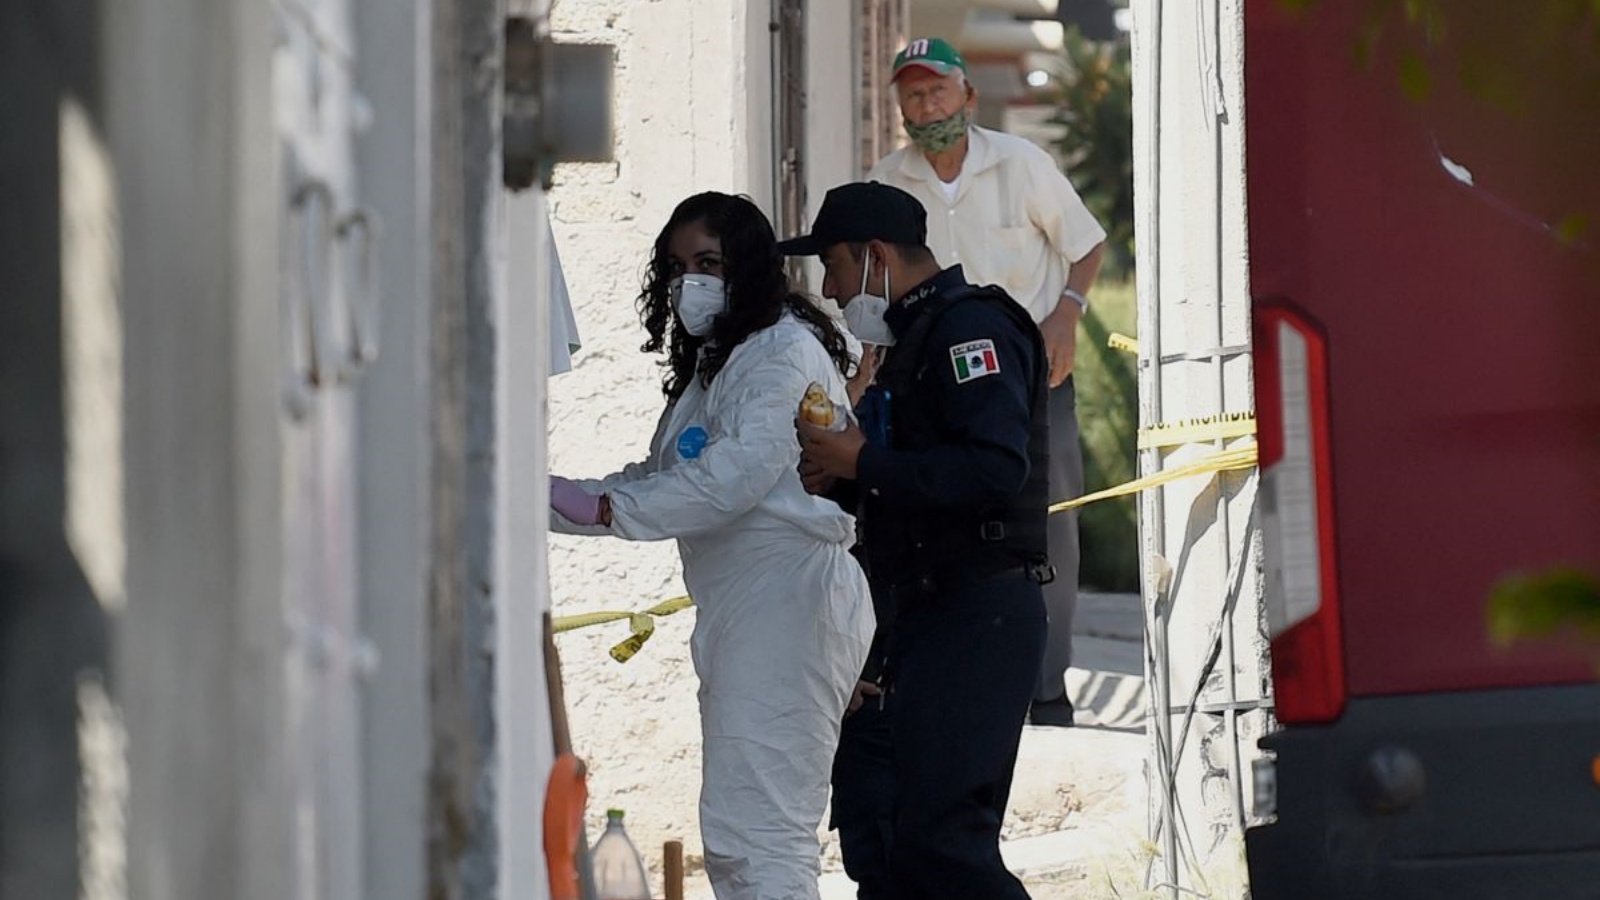 شرطي وطبيبة شرعية يدخلان منزل قاتل متسلسل مزعوم في ولاية المكسيك، المكسيك. في أيار/مايو 2021